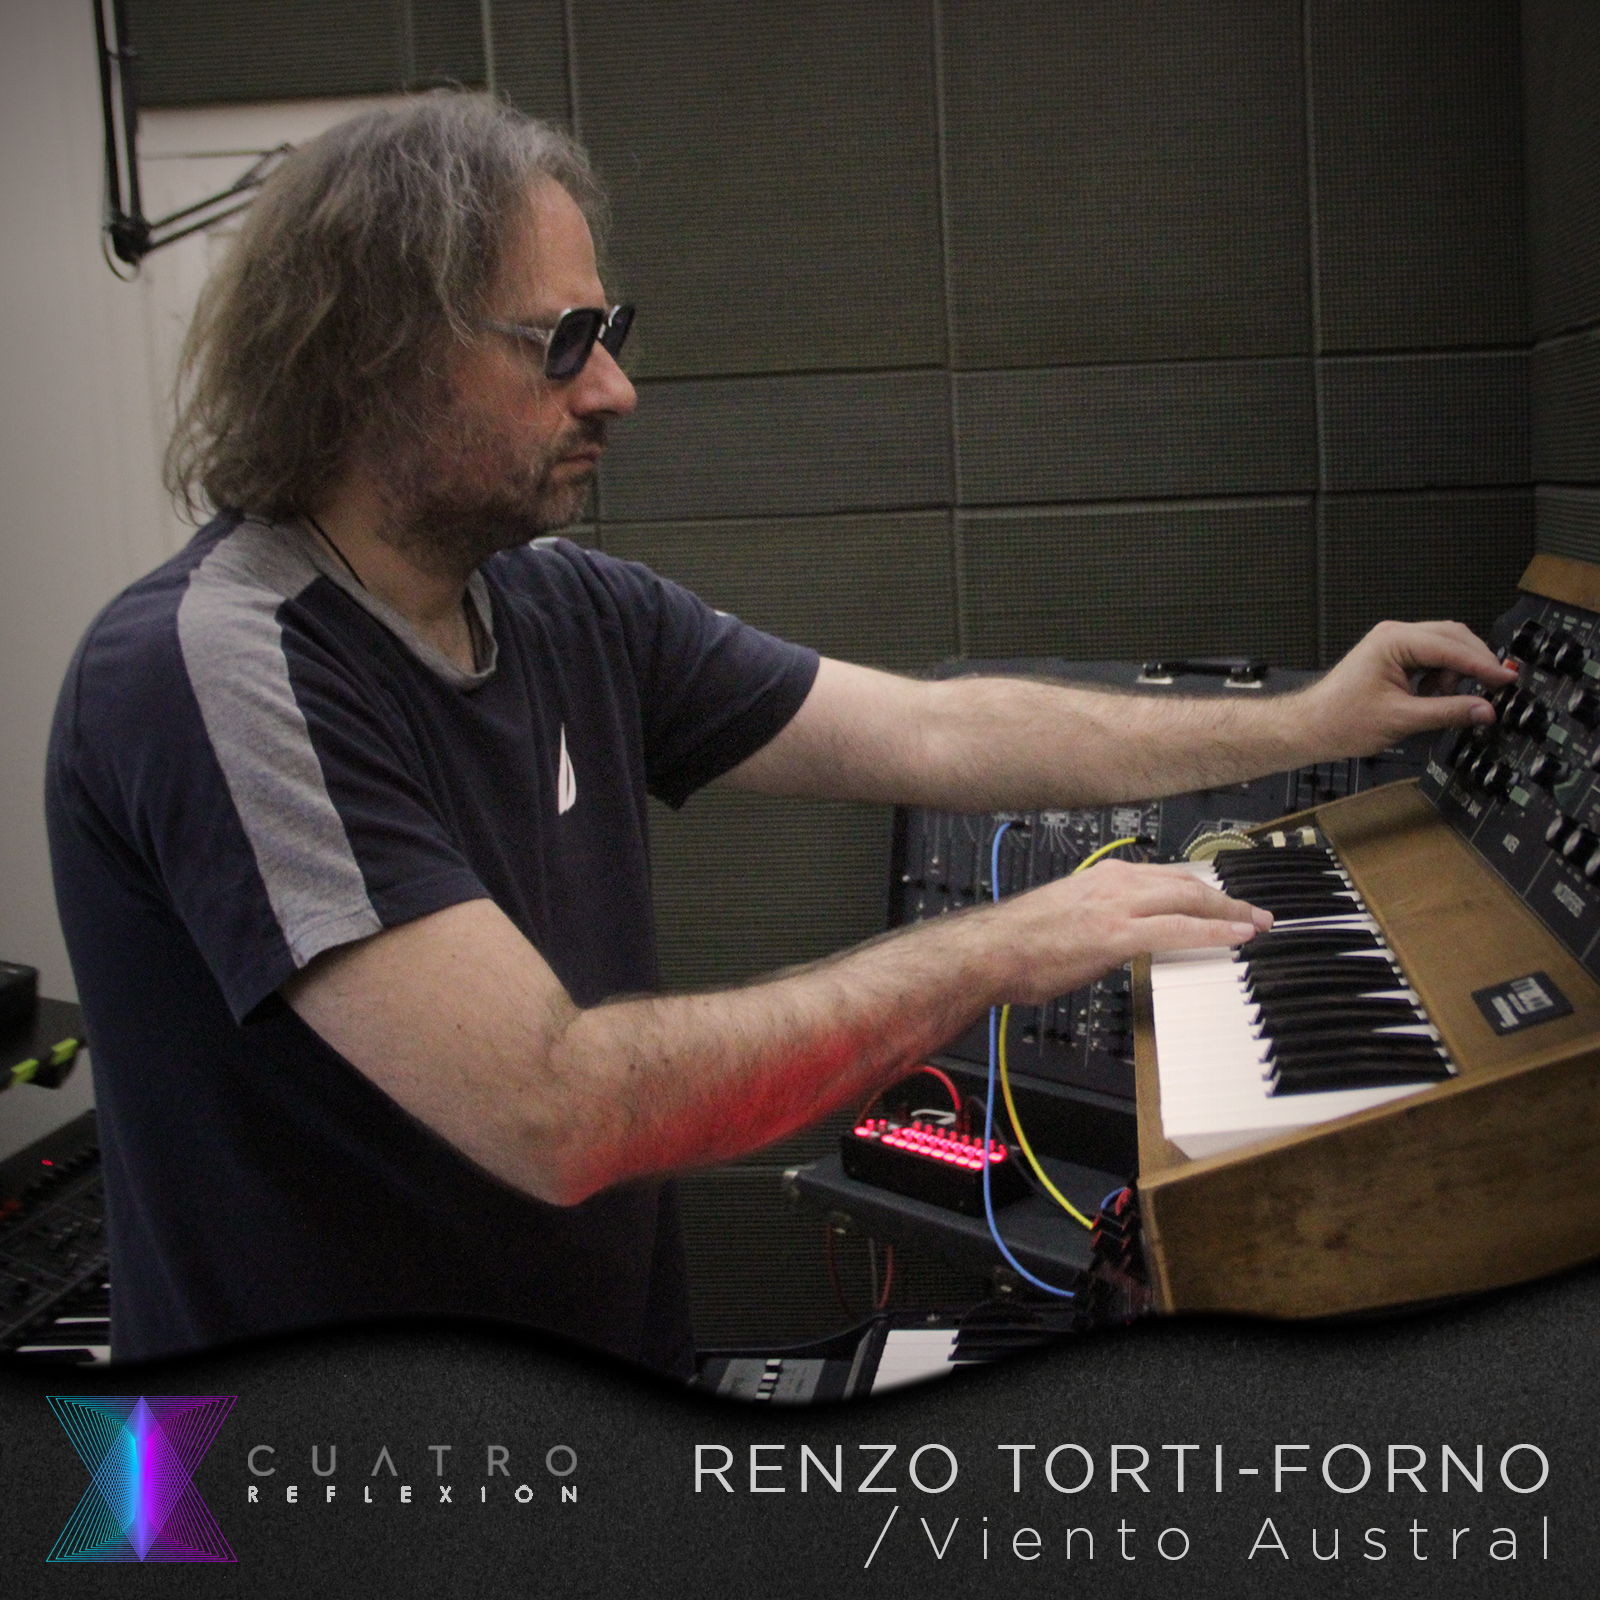 Renzo Torti-Forno